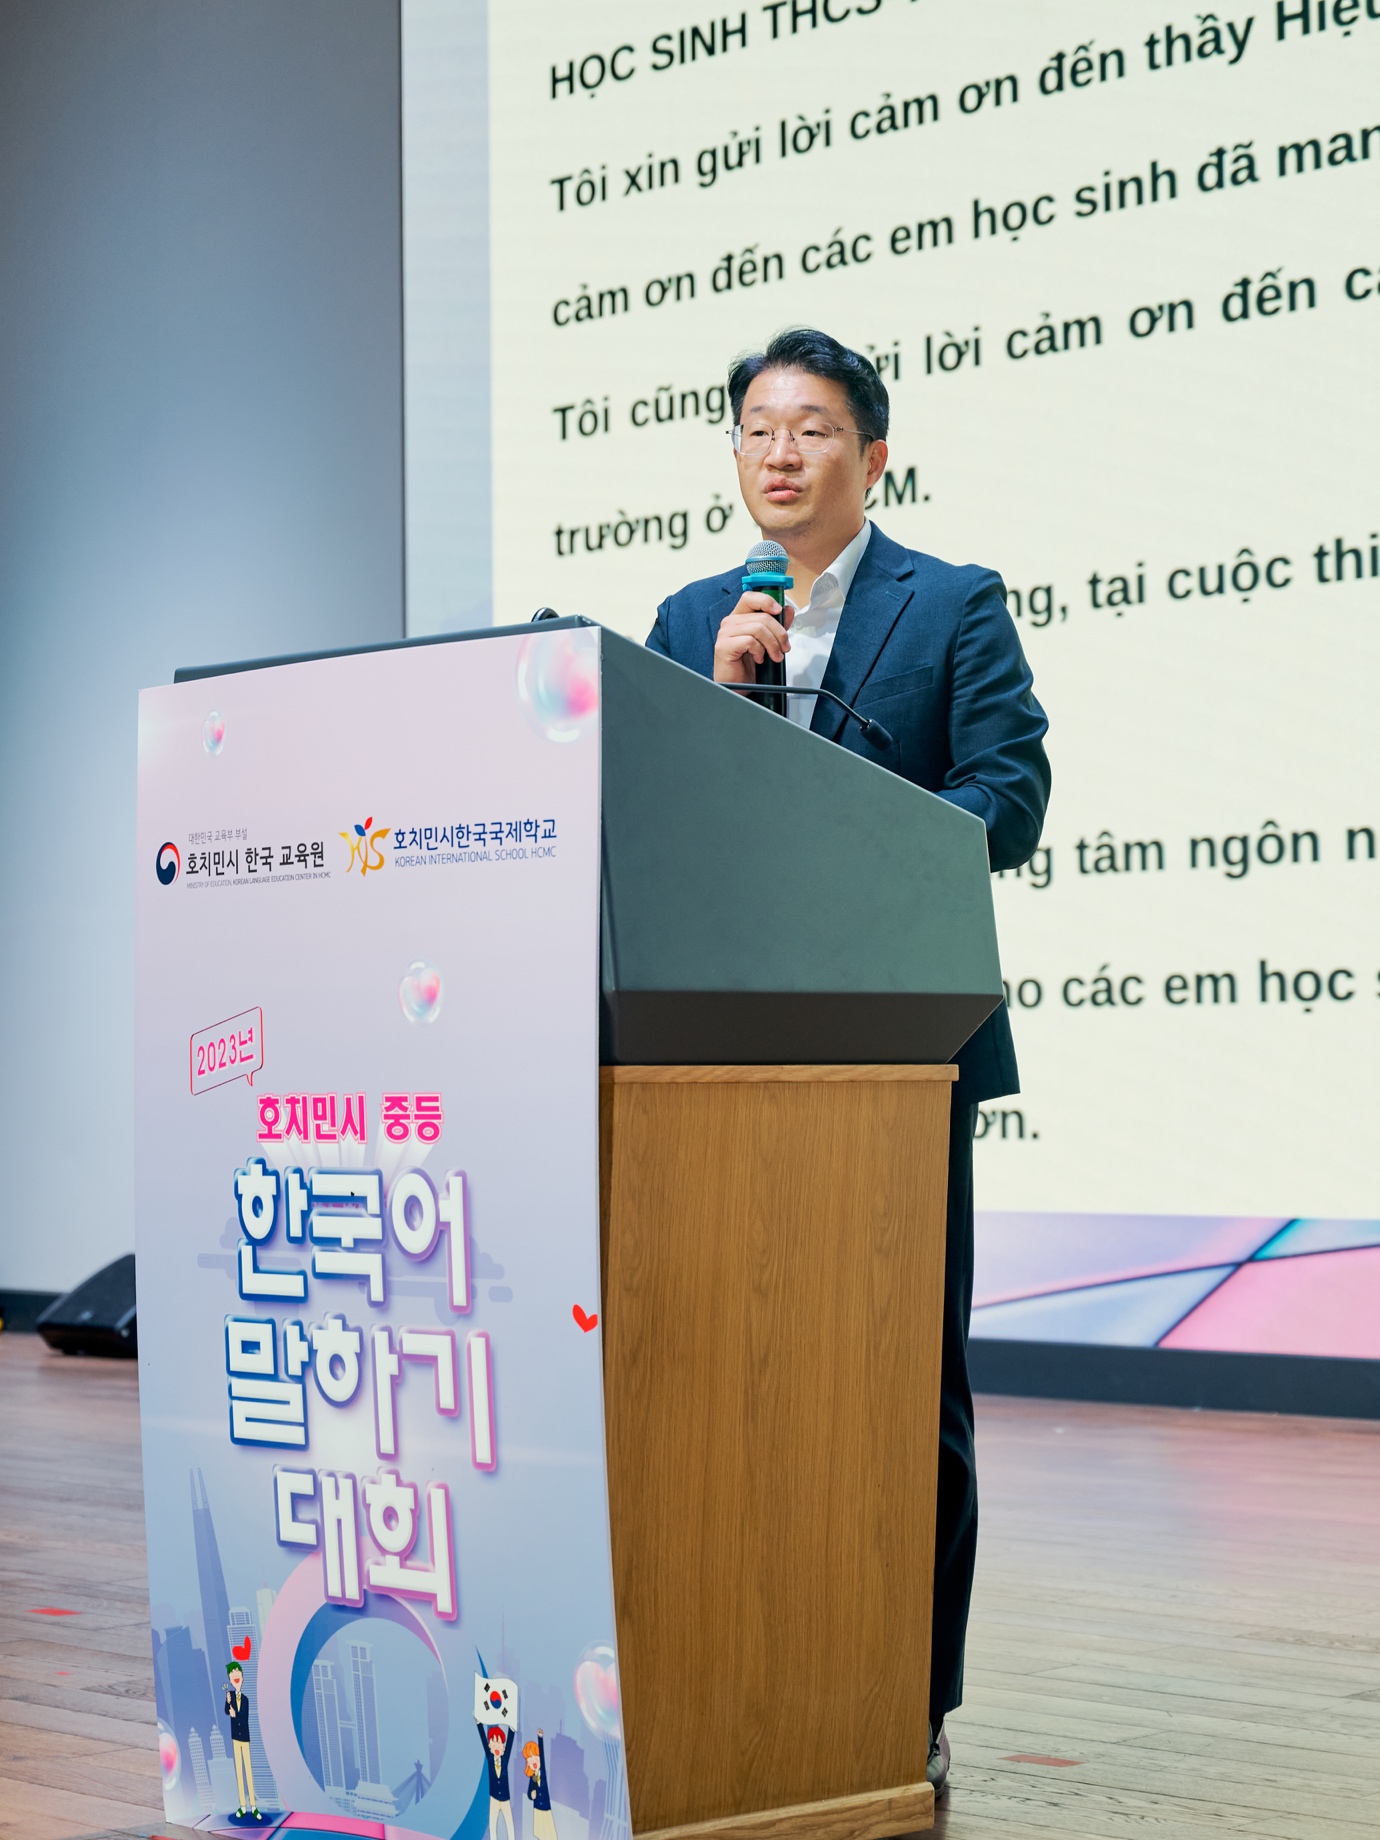 Cuộc thi Nói tiếng Hàn - Sân chơi bổ ích dành cho các bạn học sinh đang theo học tiếng Hàn tại TP.HCM - ảnh 2